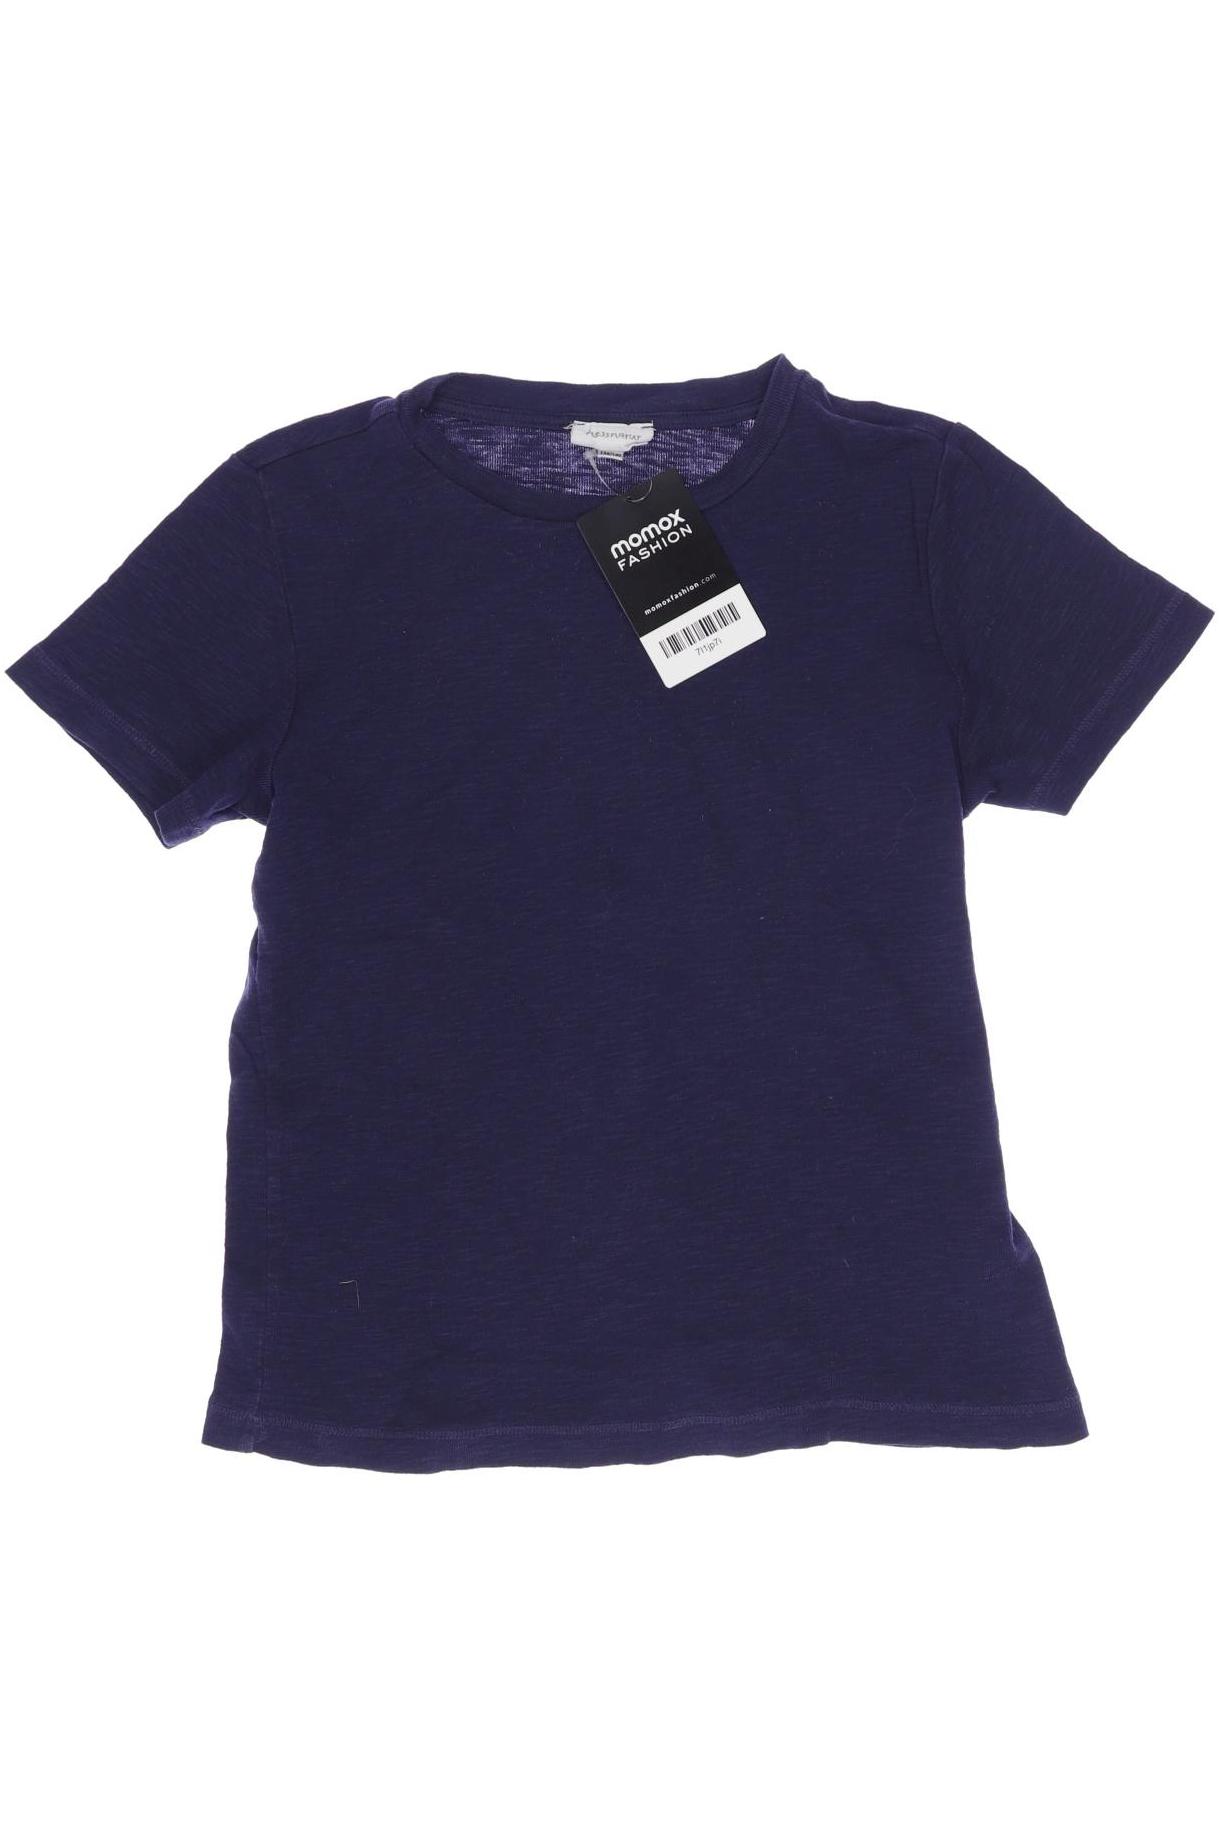 hessnatur Damen T-Shirt, marineblau, Gr. 134 von hessnatur